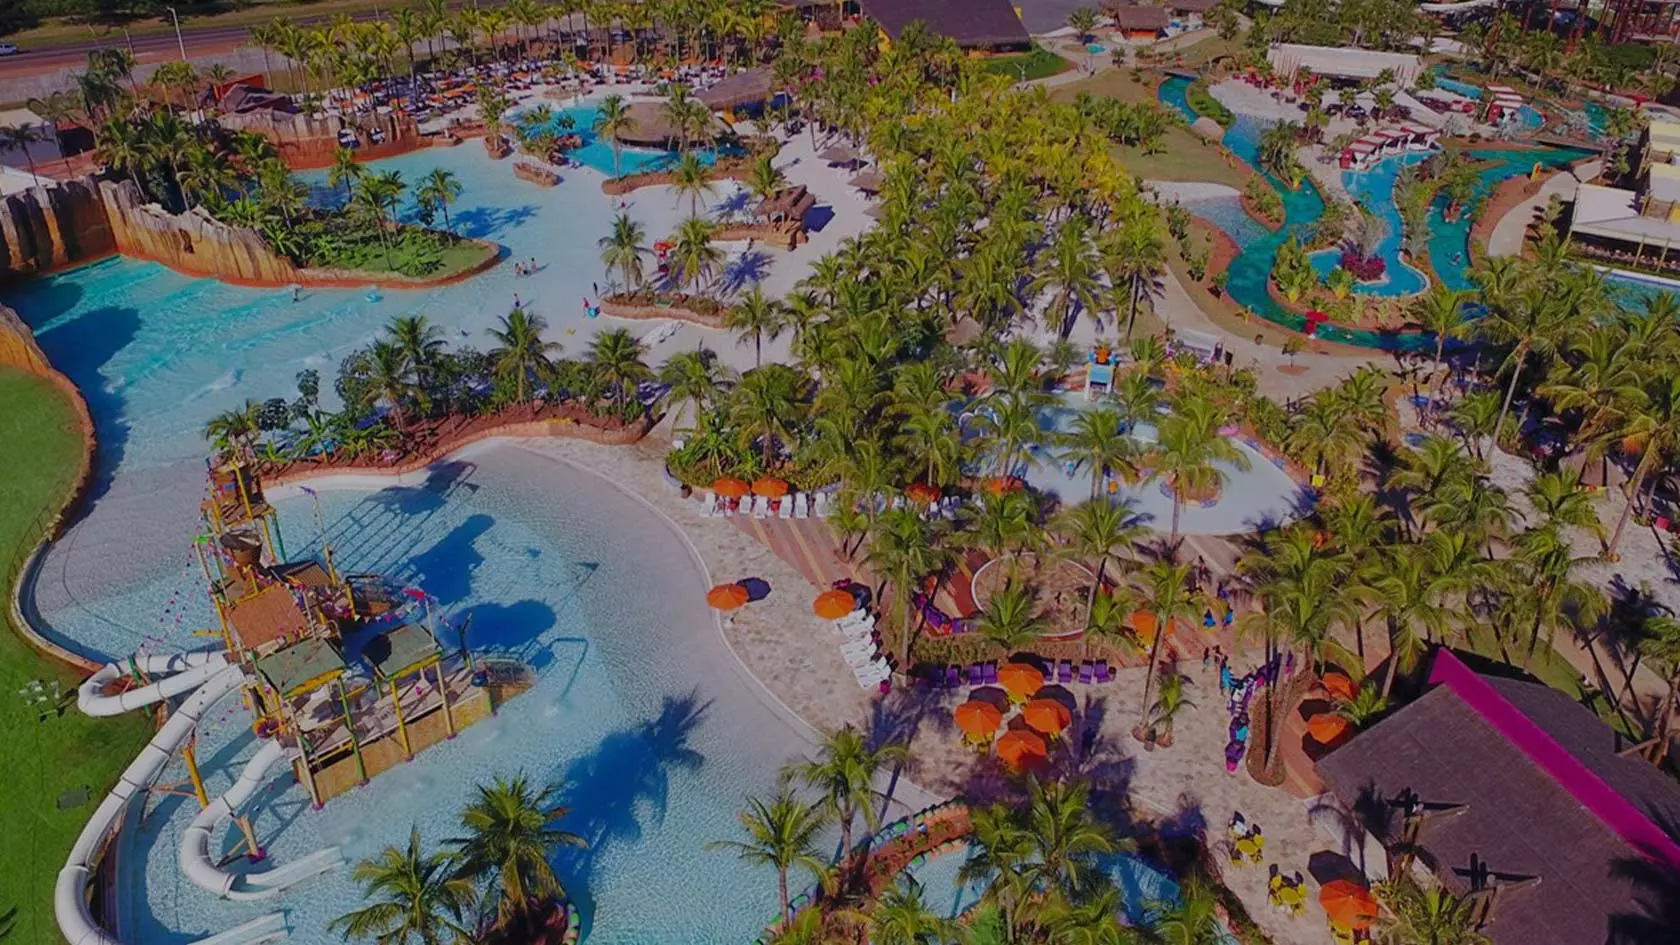 Hot Beach Resort Olímpia – Resort e Parque Aquático